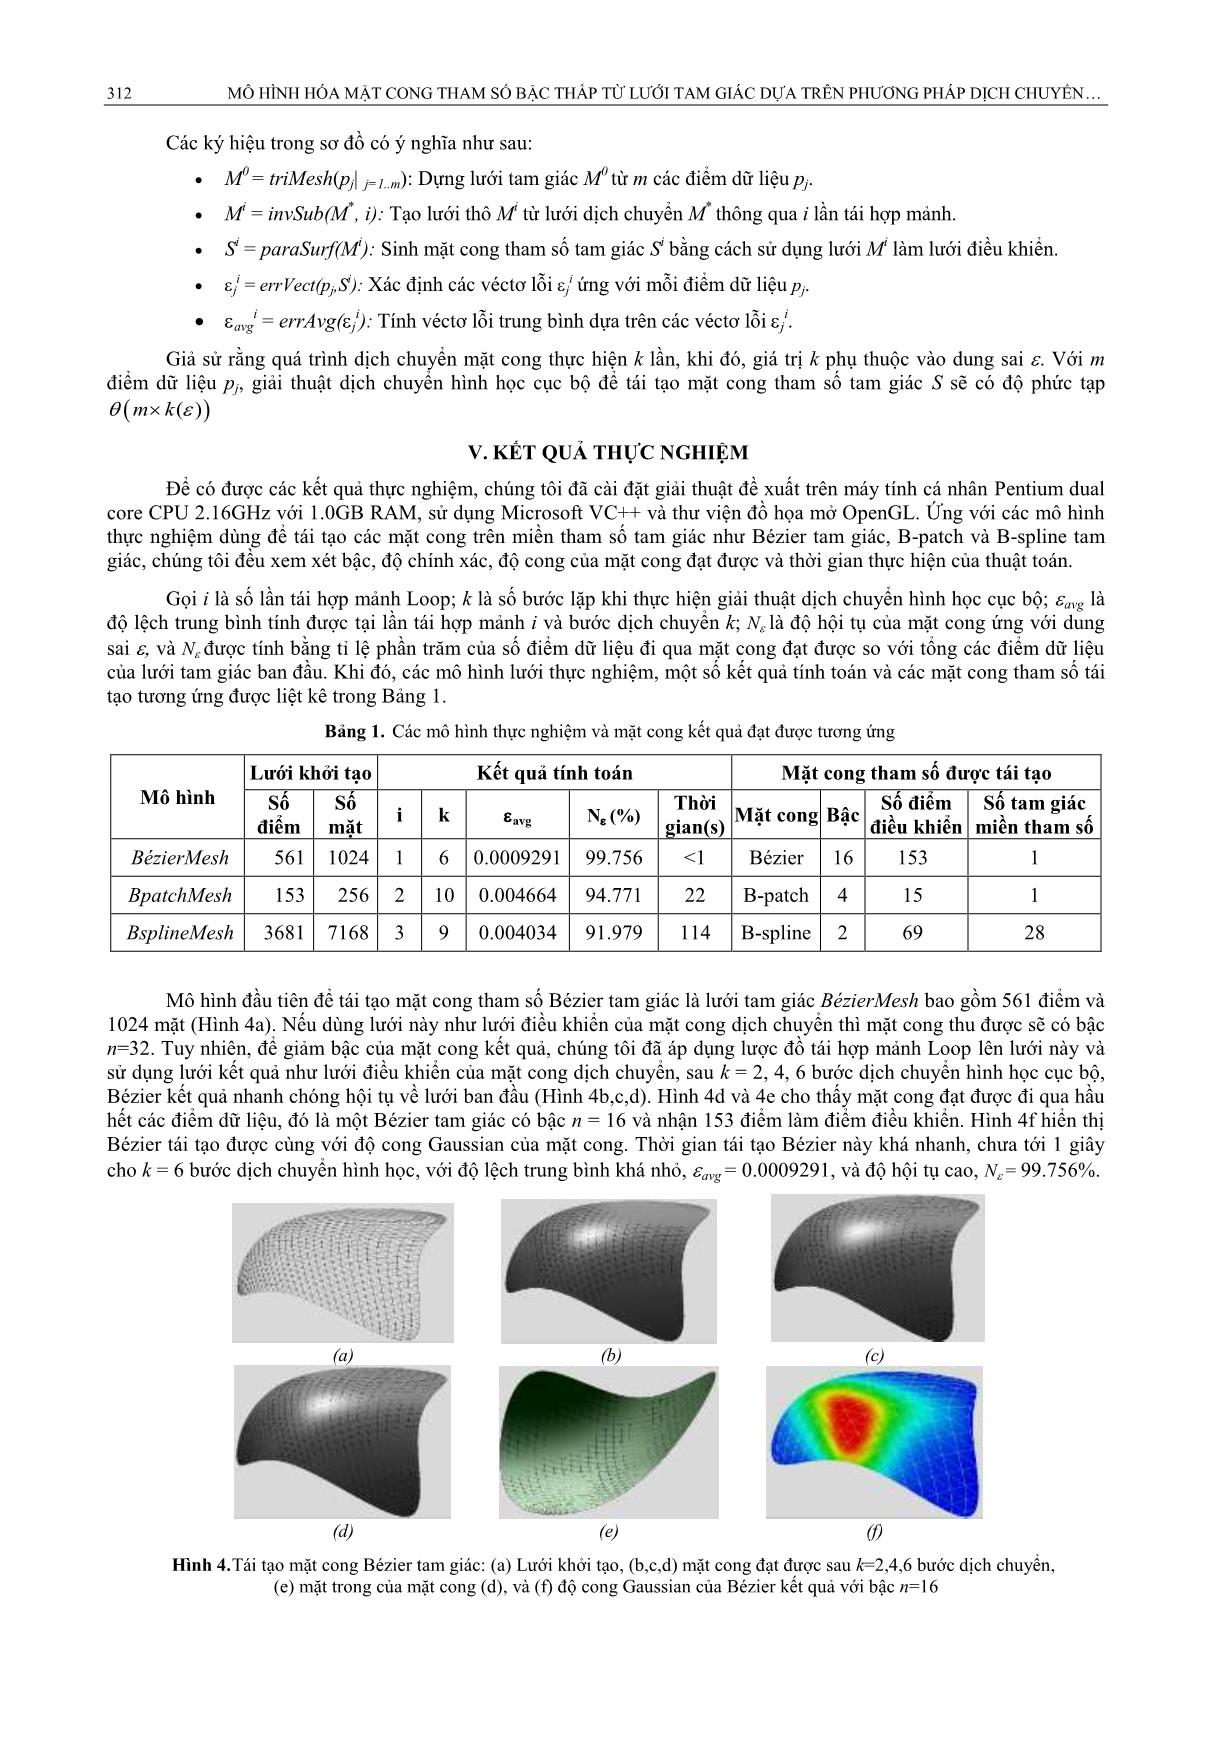 Mô hình hóa mặt cong tham số bậc thấp từ lưới tam giác dựa trên phương pháp dịch chuyển hình học cục bộ trang 5